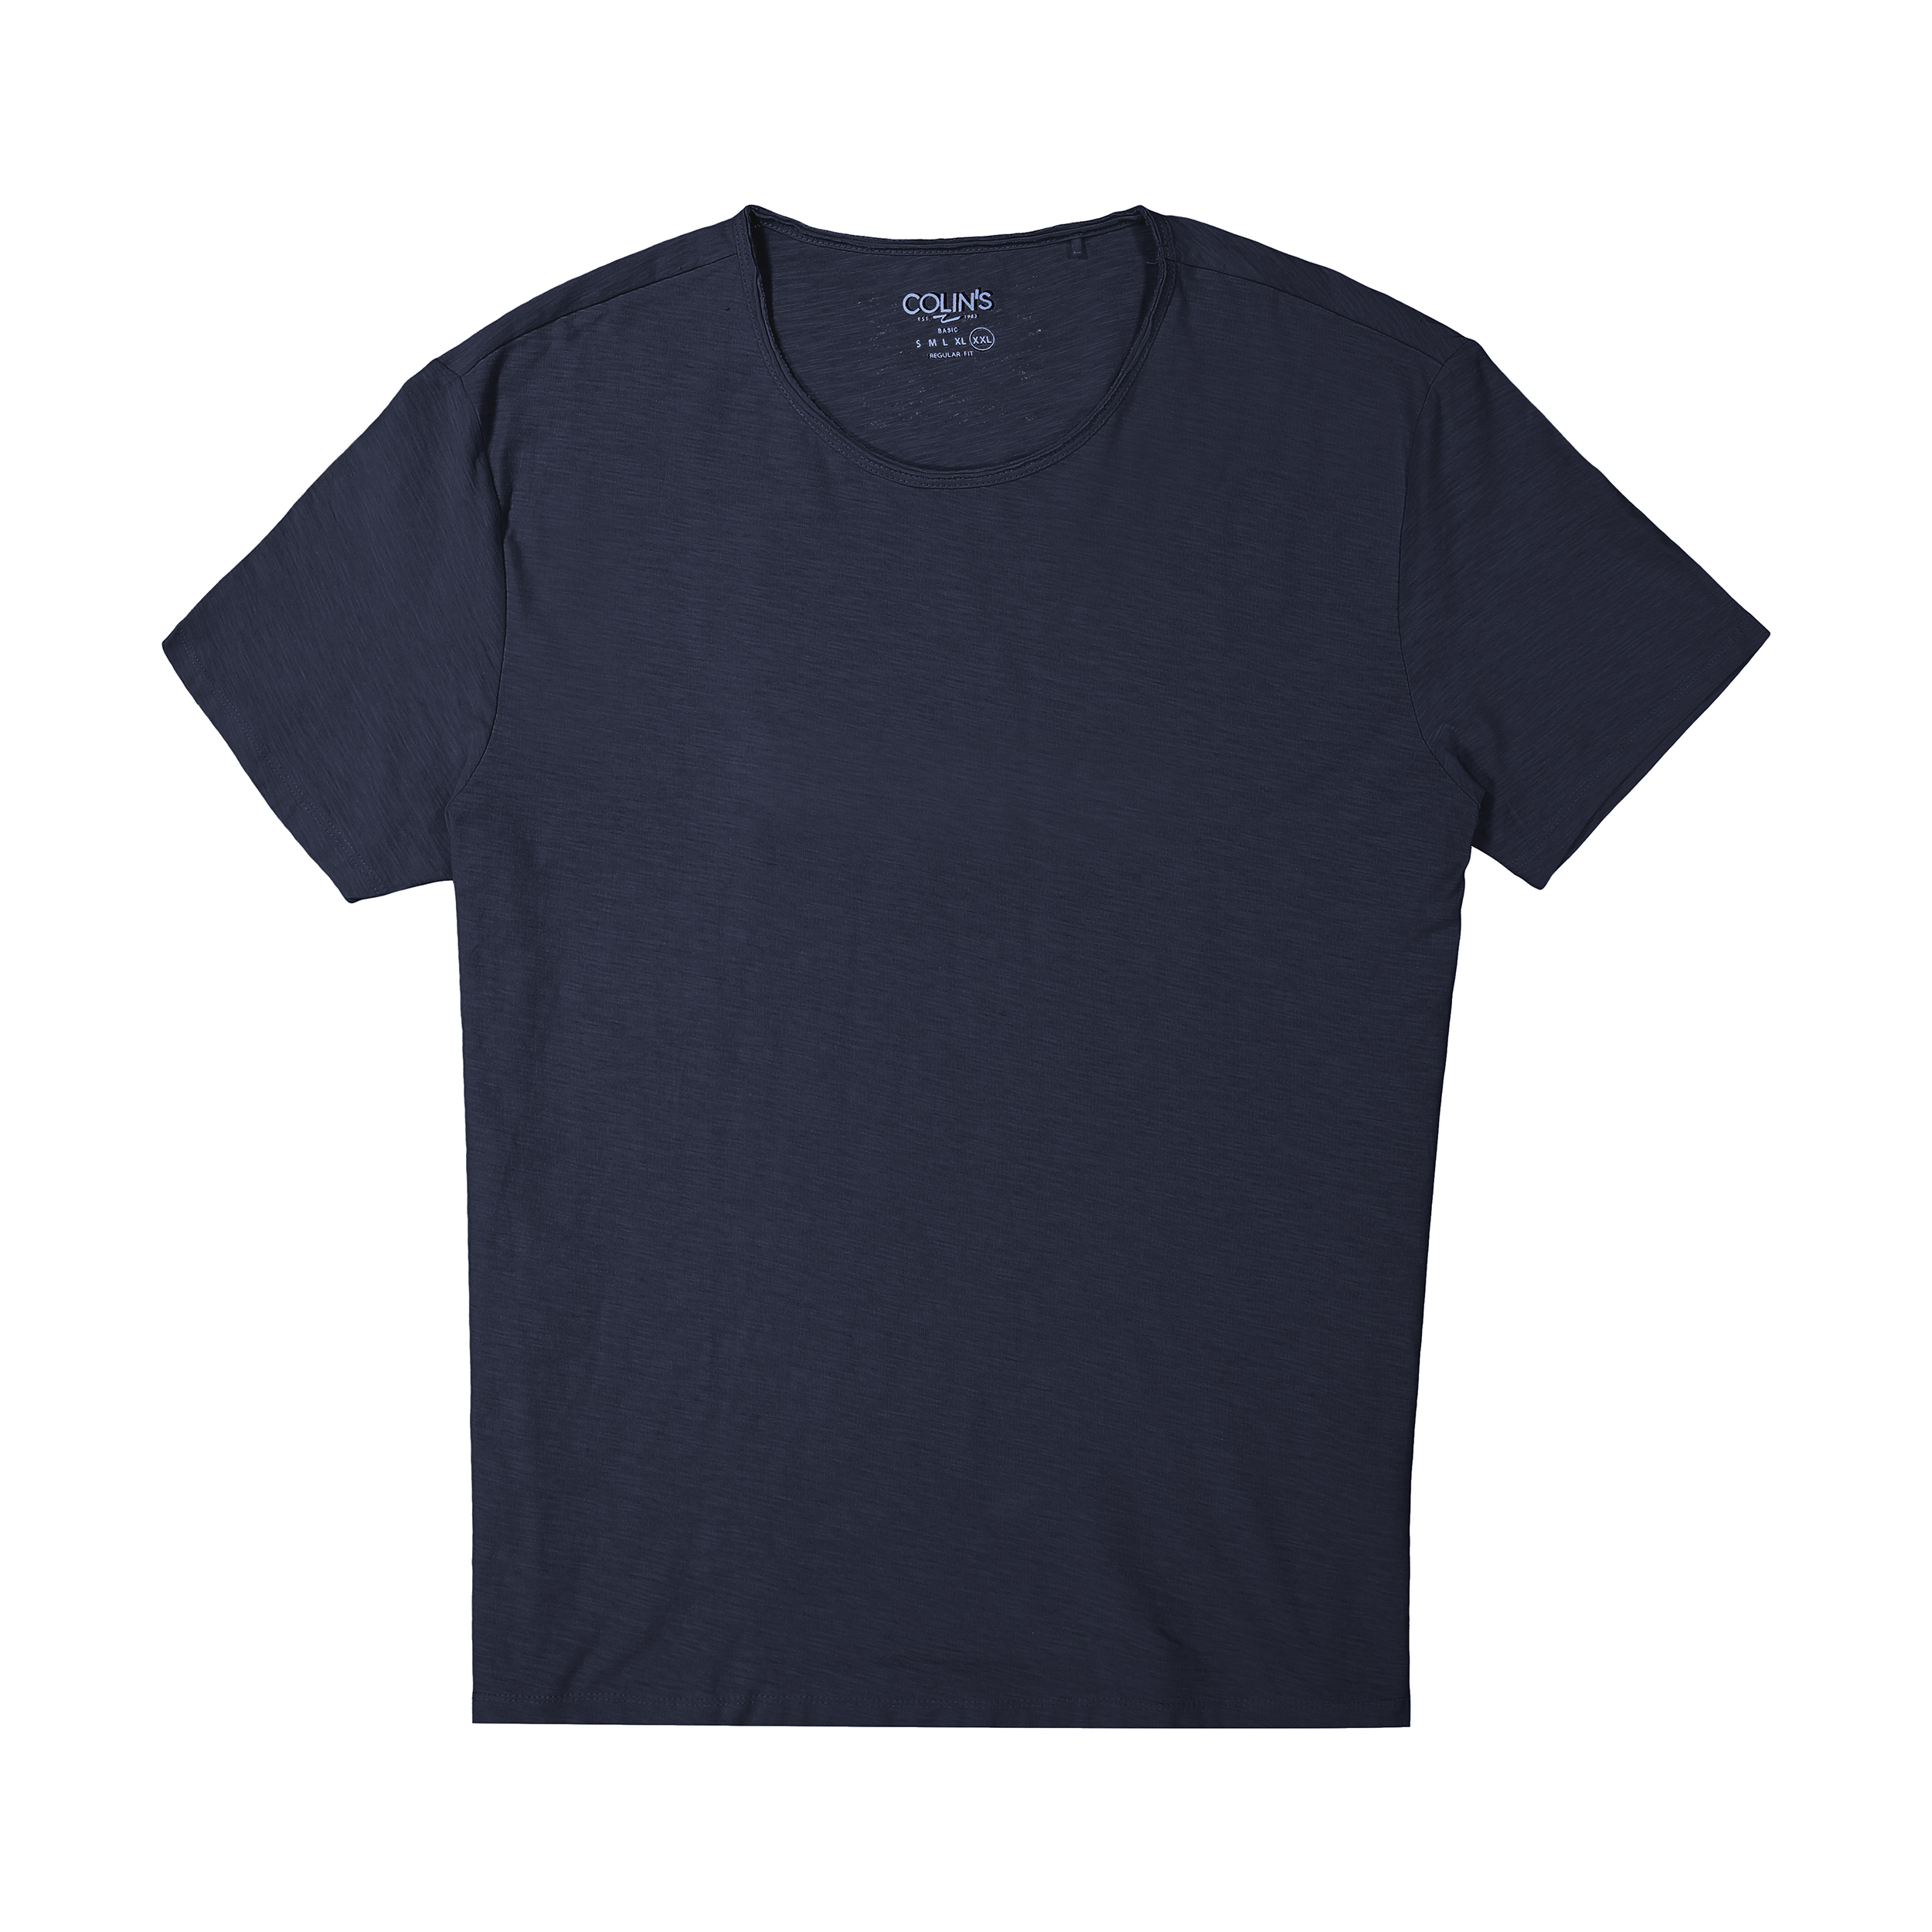 تی شرت مردانه کالینز مدل CL1025255-NAV